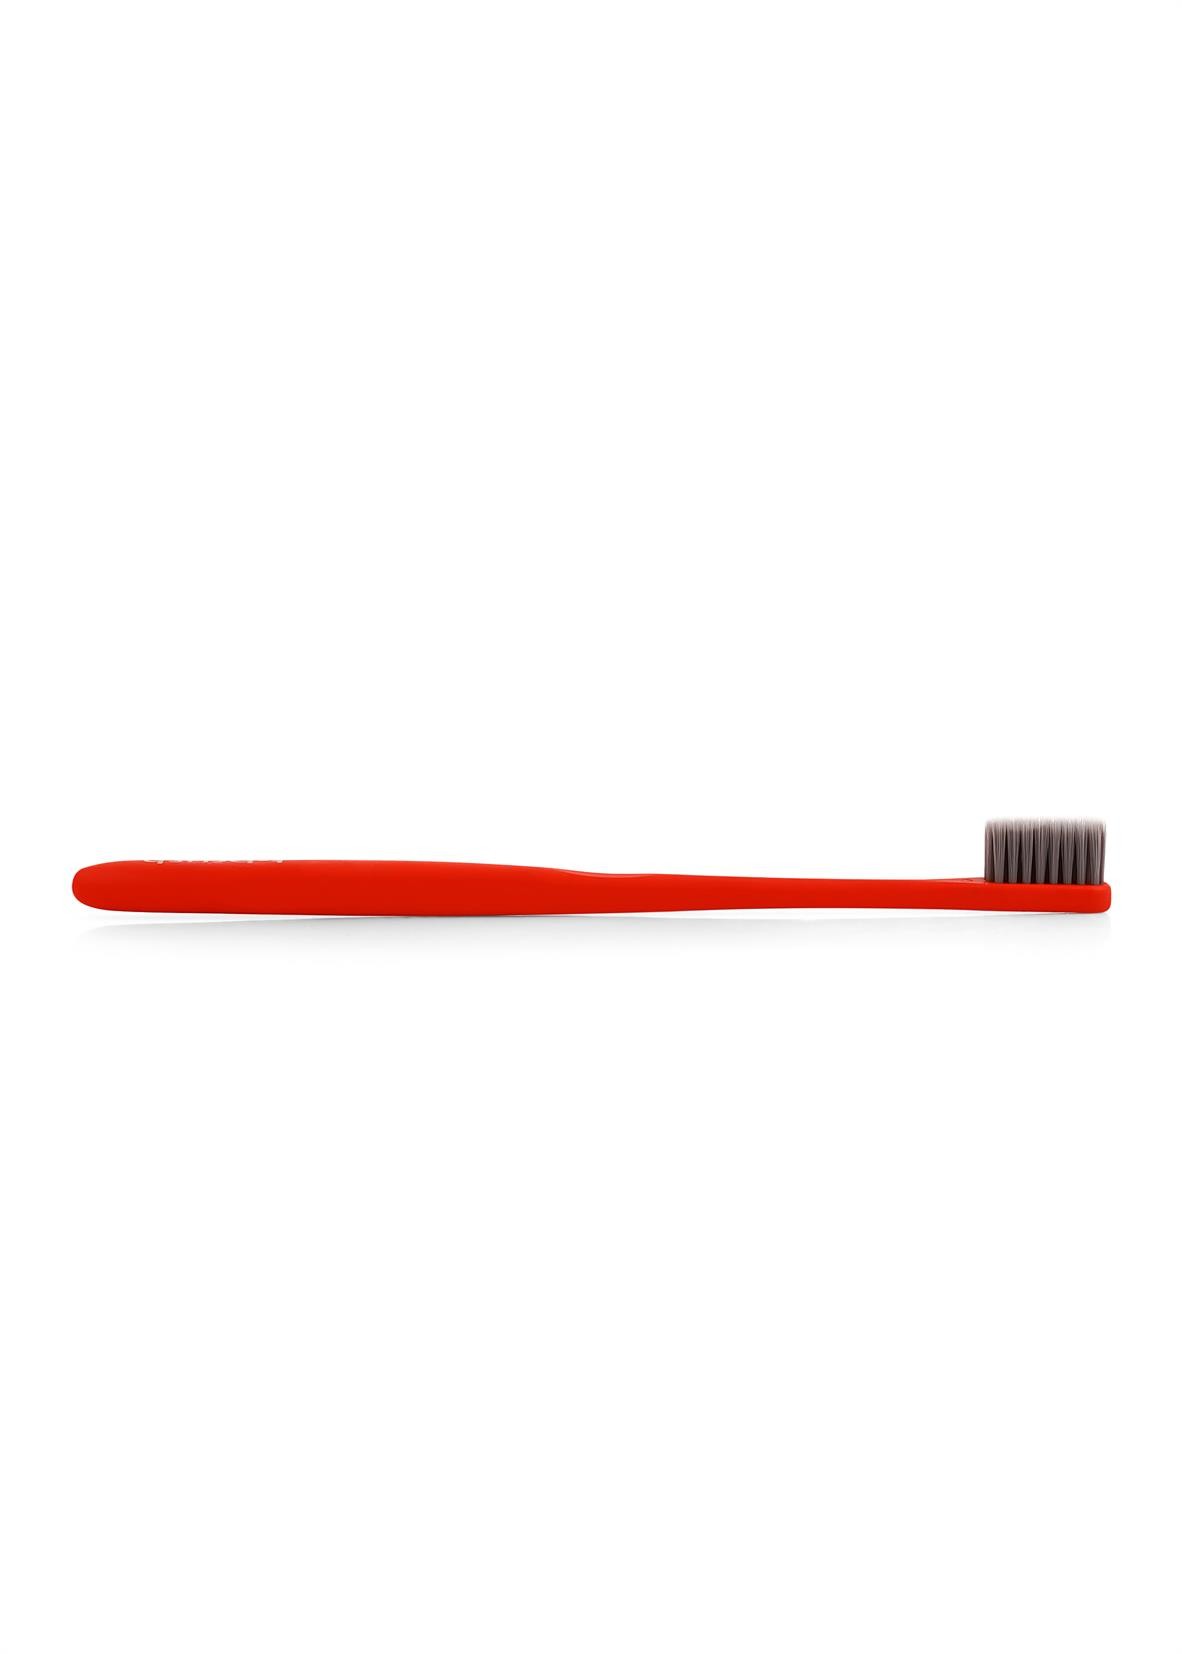 T-Brush Bioçözünür Diş Fırçası – Kırmızı Renk – Orta Sert